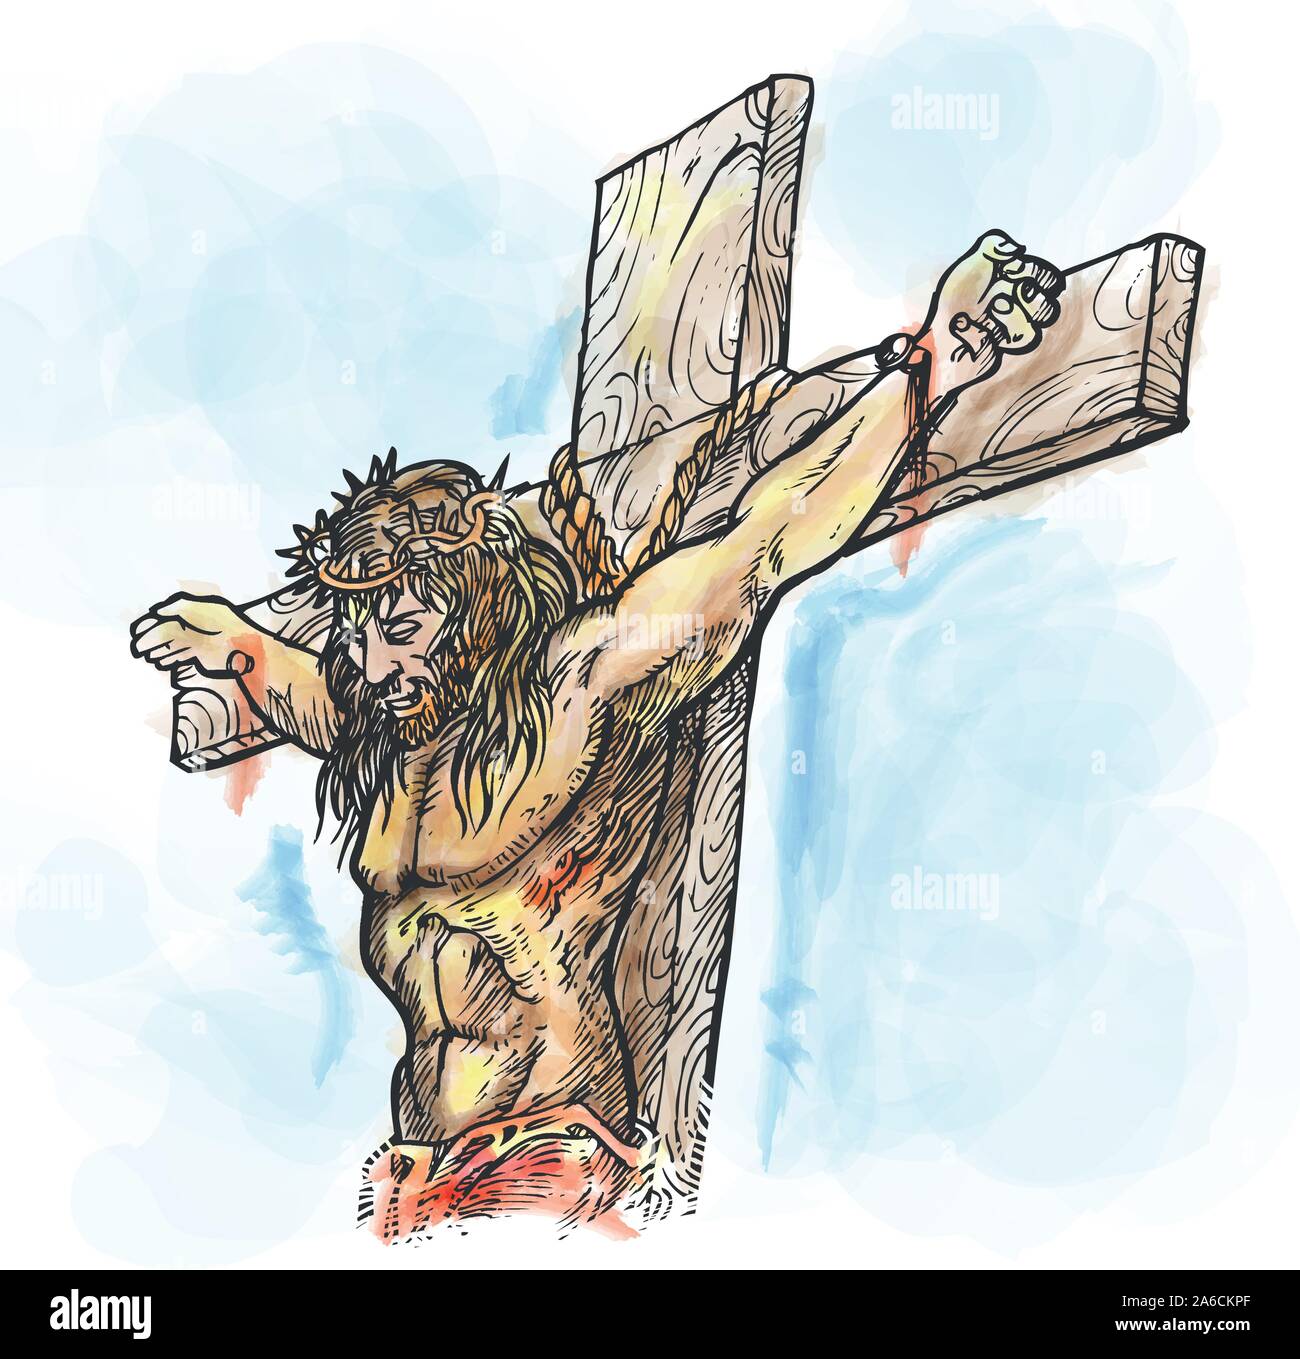 Croce croce crocifisso cristo Immagini Vettoriali Stock - Alamy